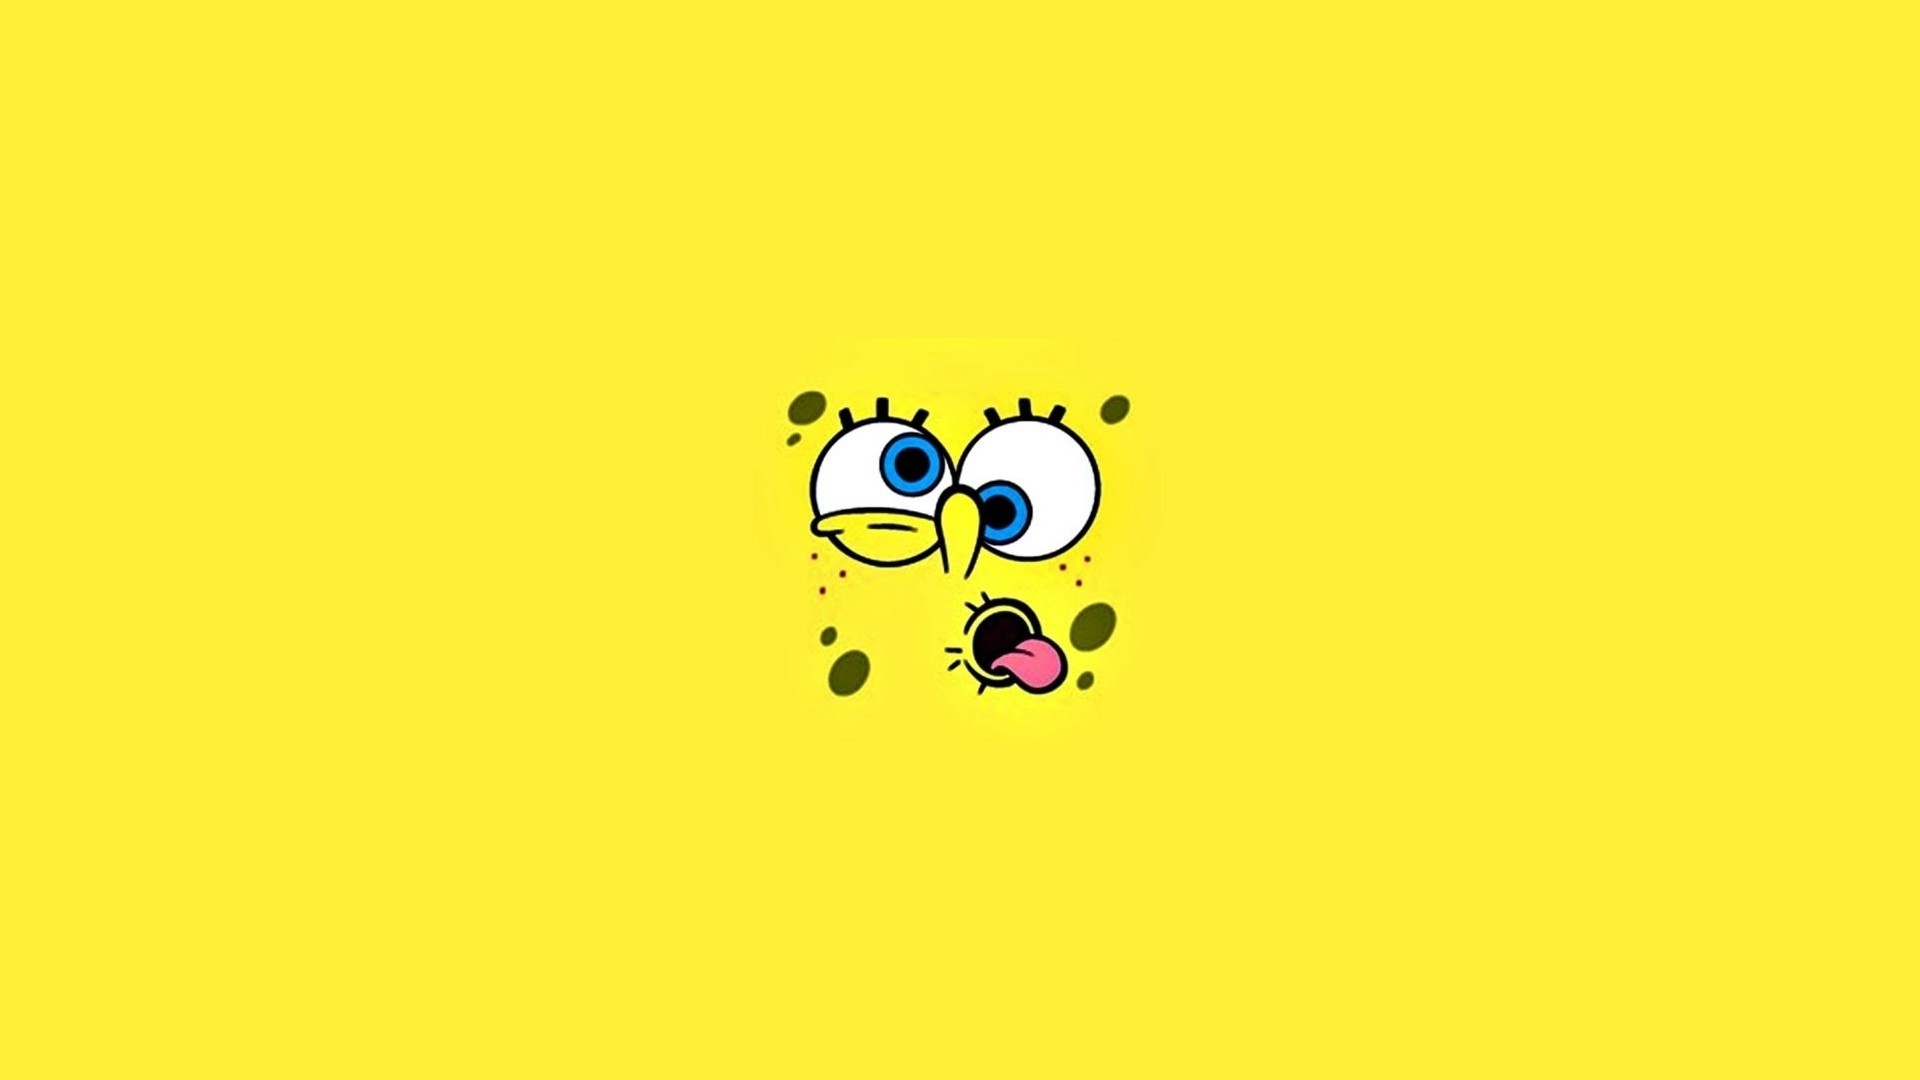 Aesthetic Spongebob Image